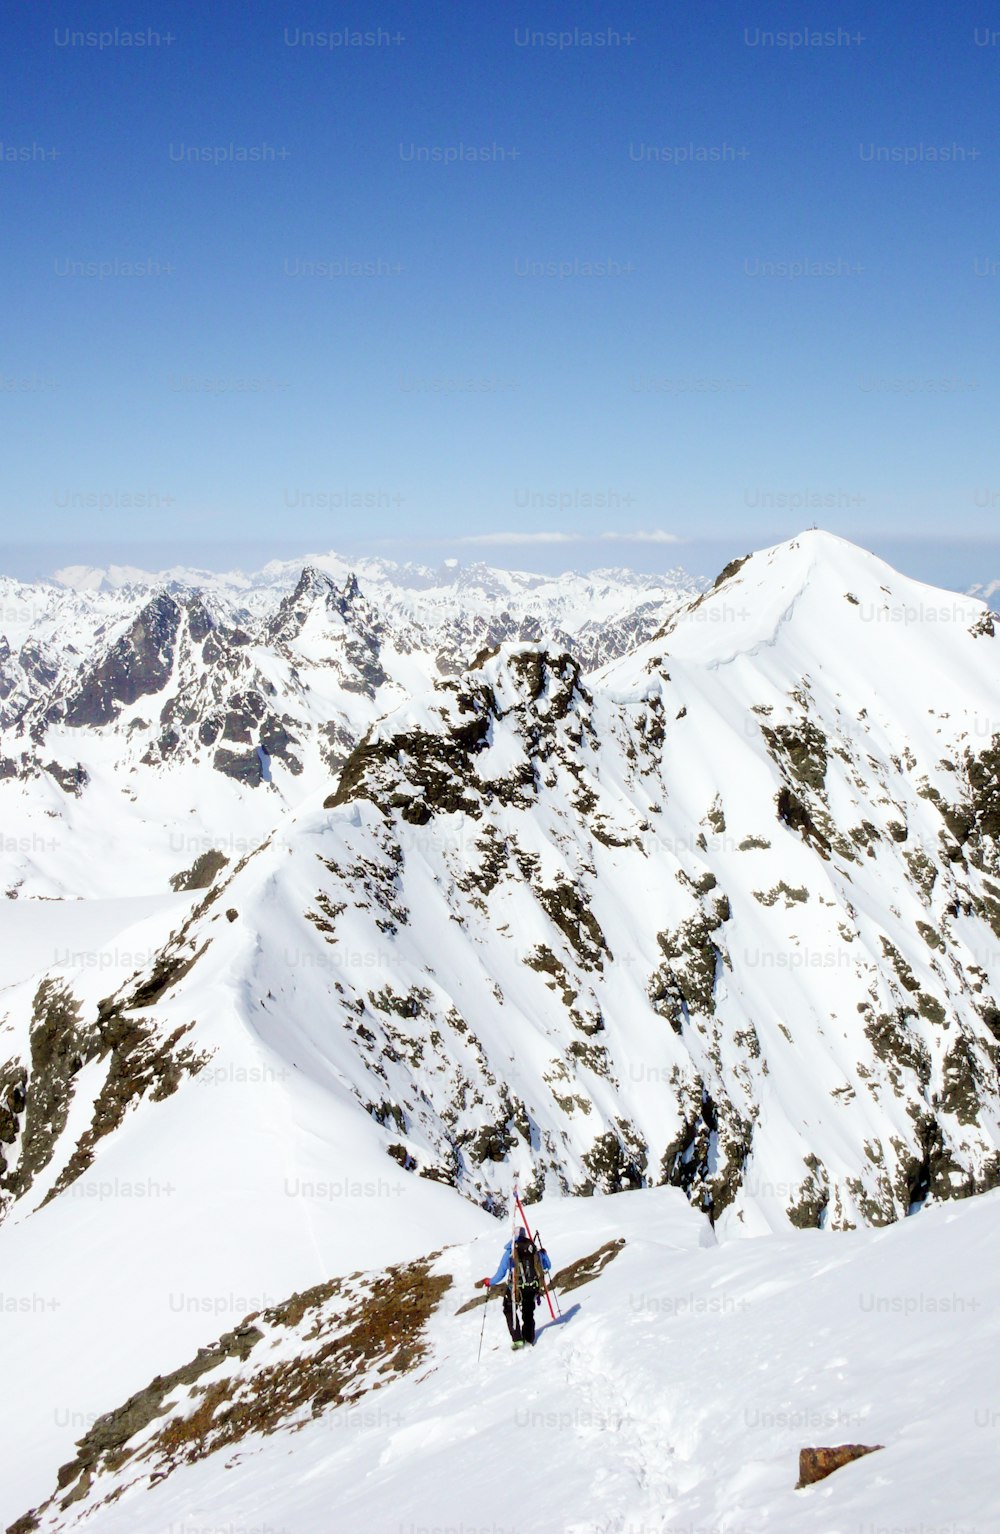 Un skieur de randonnée grimpe et fait de la randonnée sur une longue crête de neige étroite et exposée dans les Alpes suisses en direction d’un haut sommet de la chaîne de montagnes Silvretta.